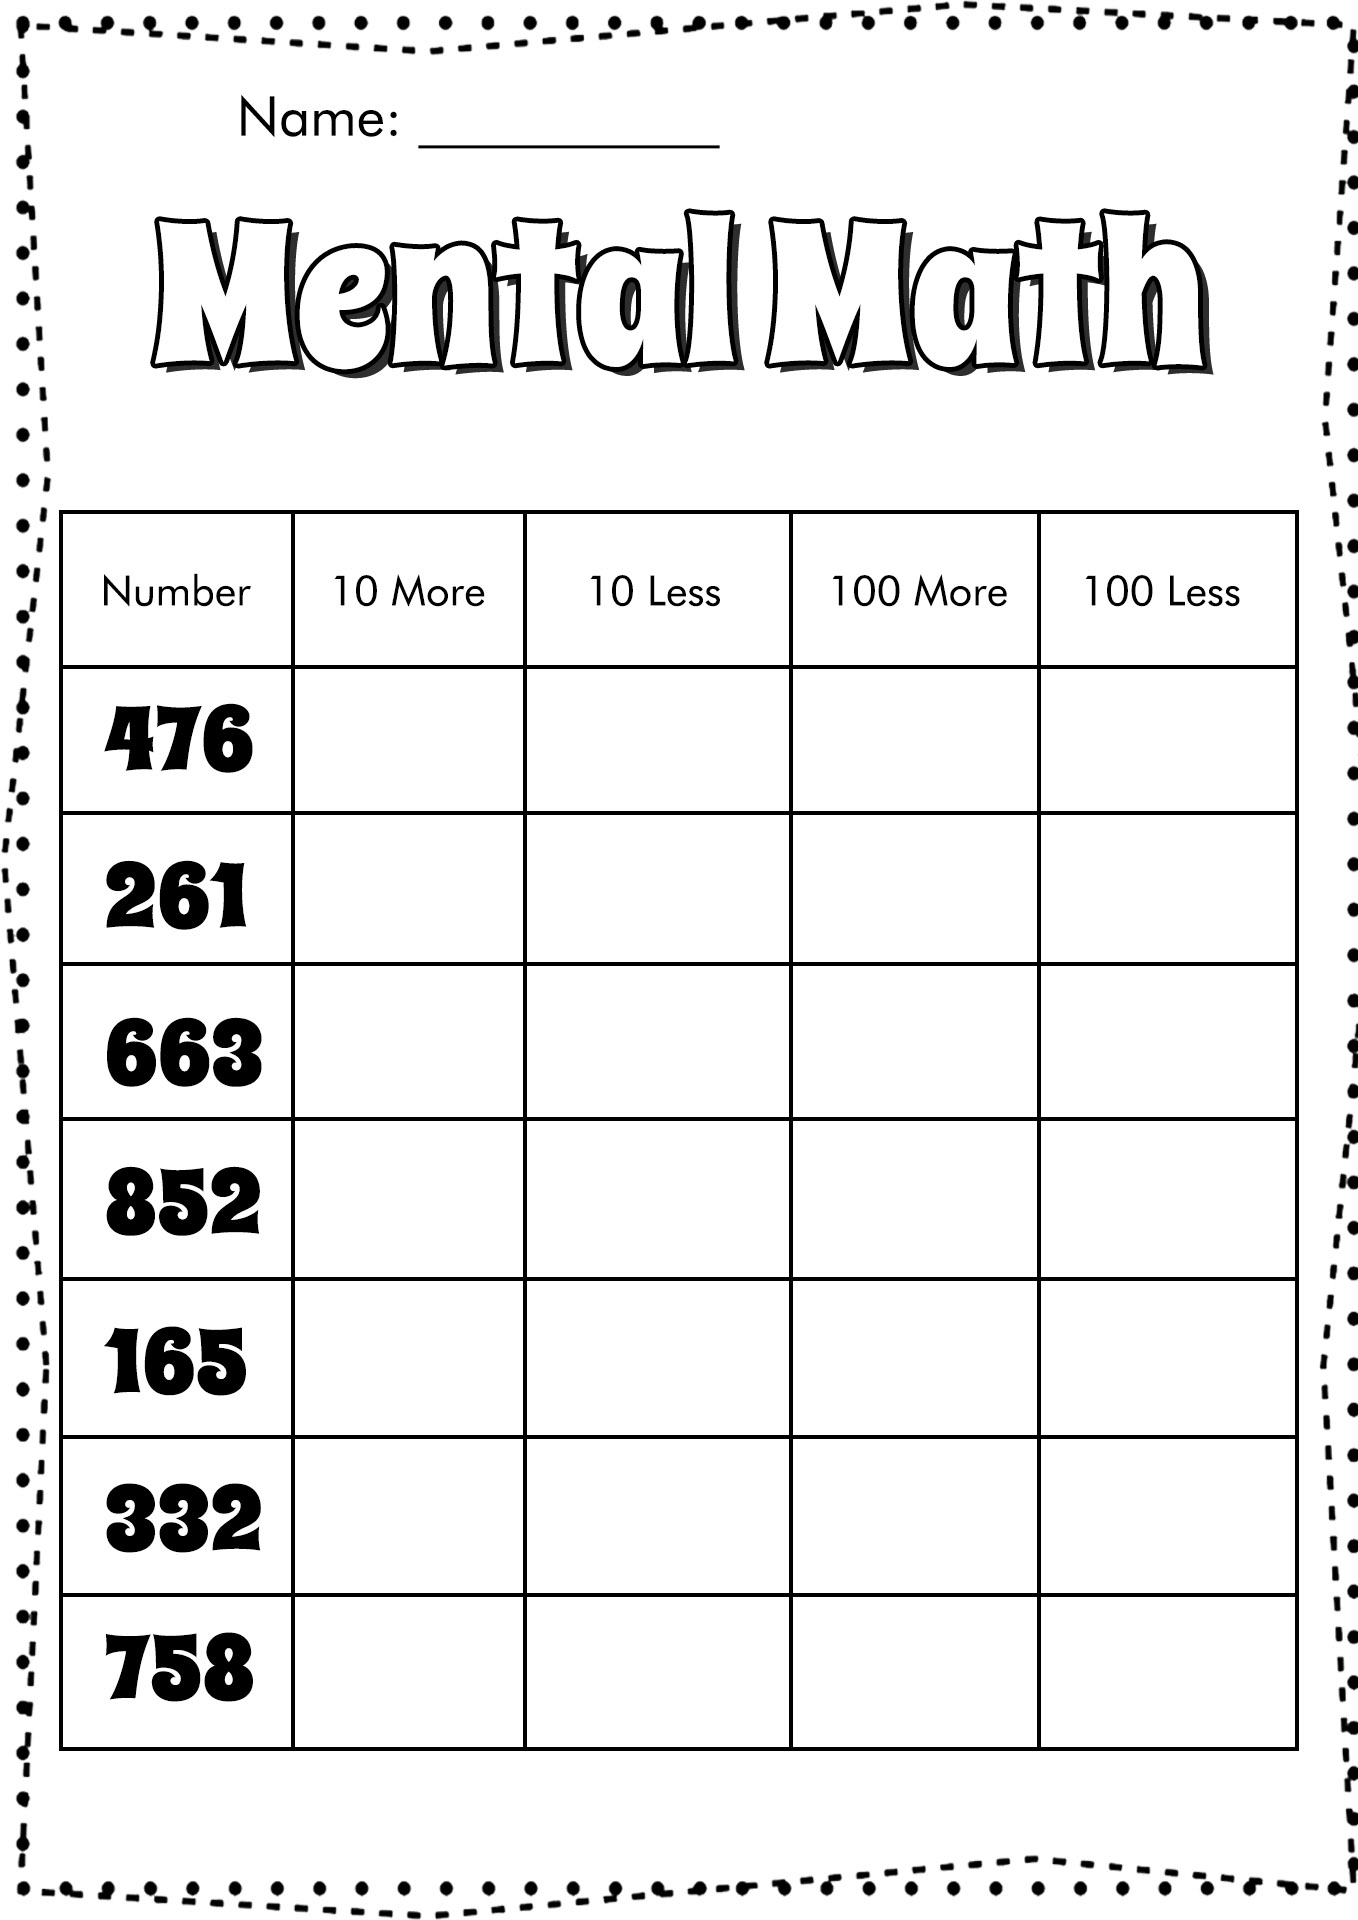 Mental Math Worksheets Image